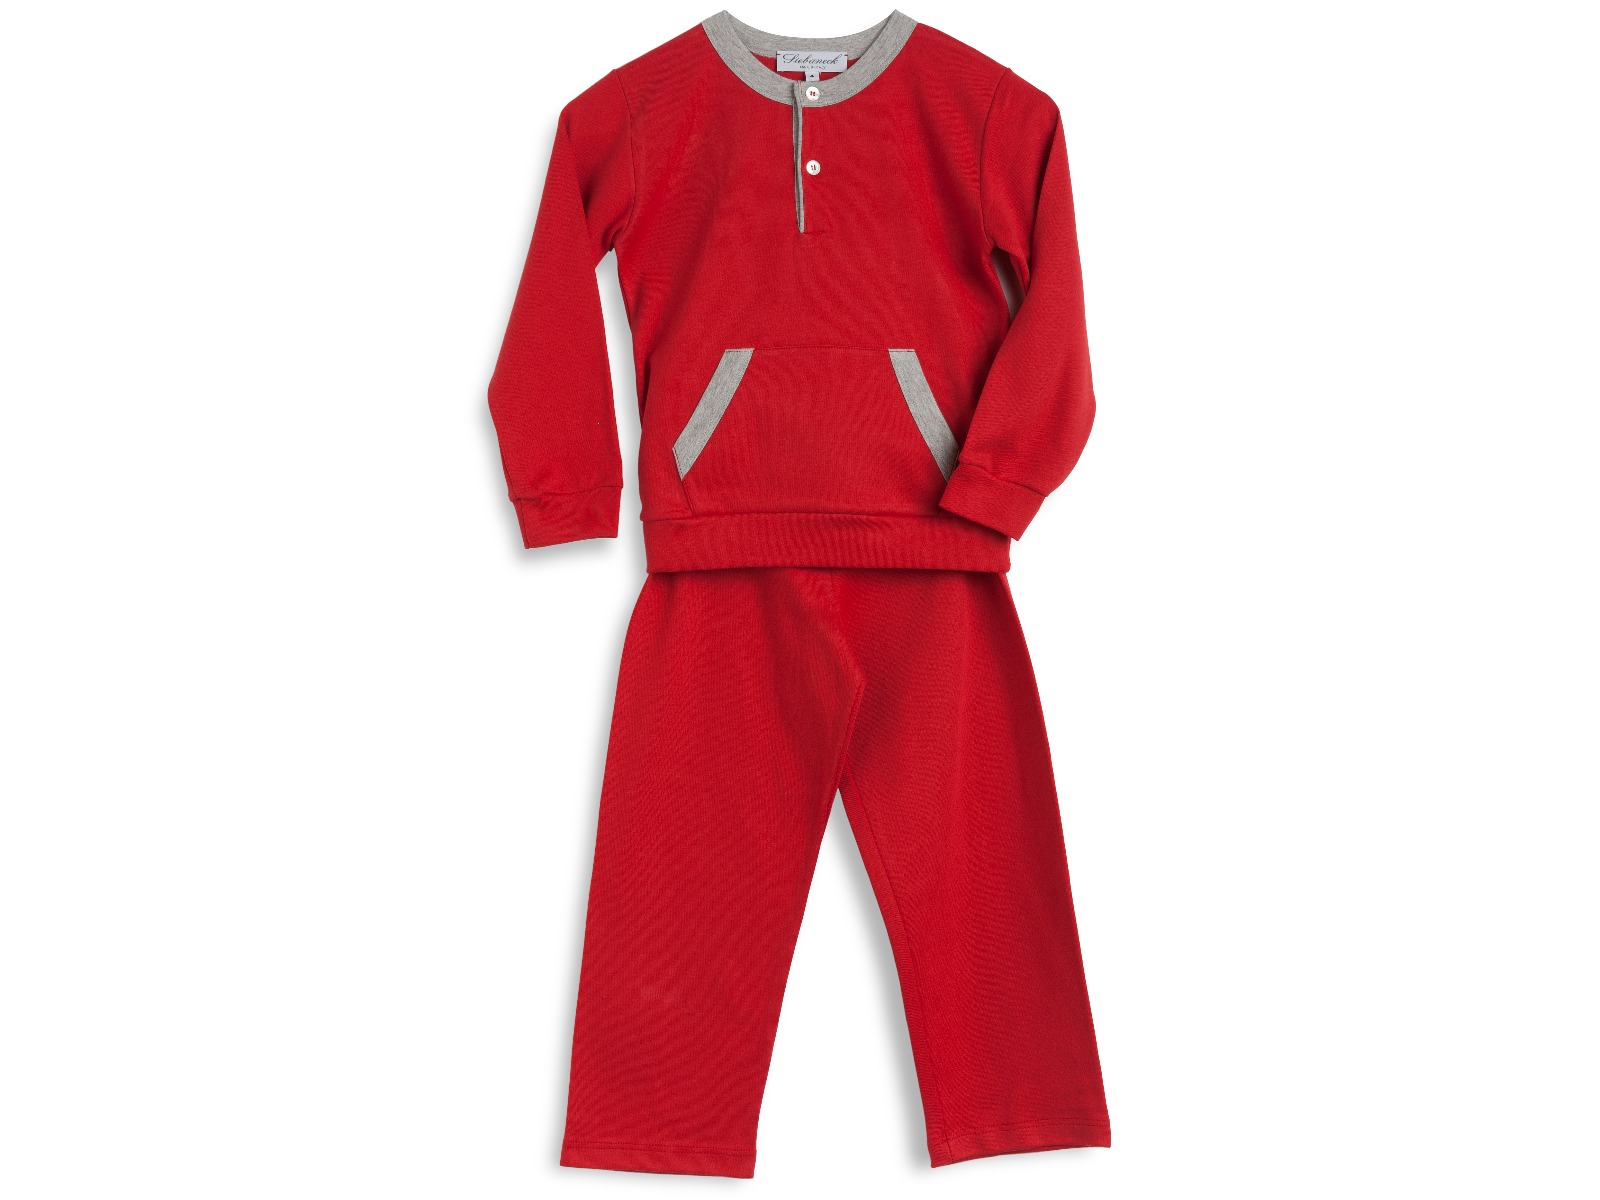 Siebaneck, i pigiami artigianali italiani: - bambino - mod. 107 rosso e grigio